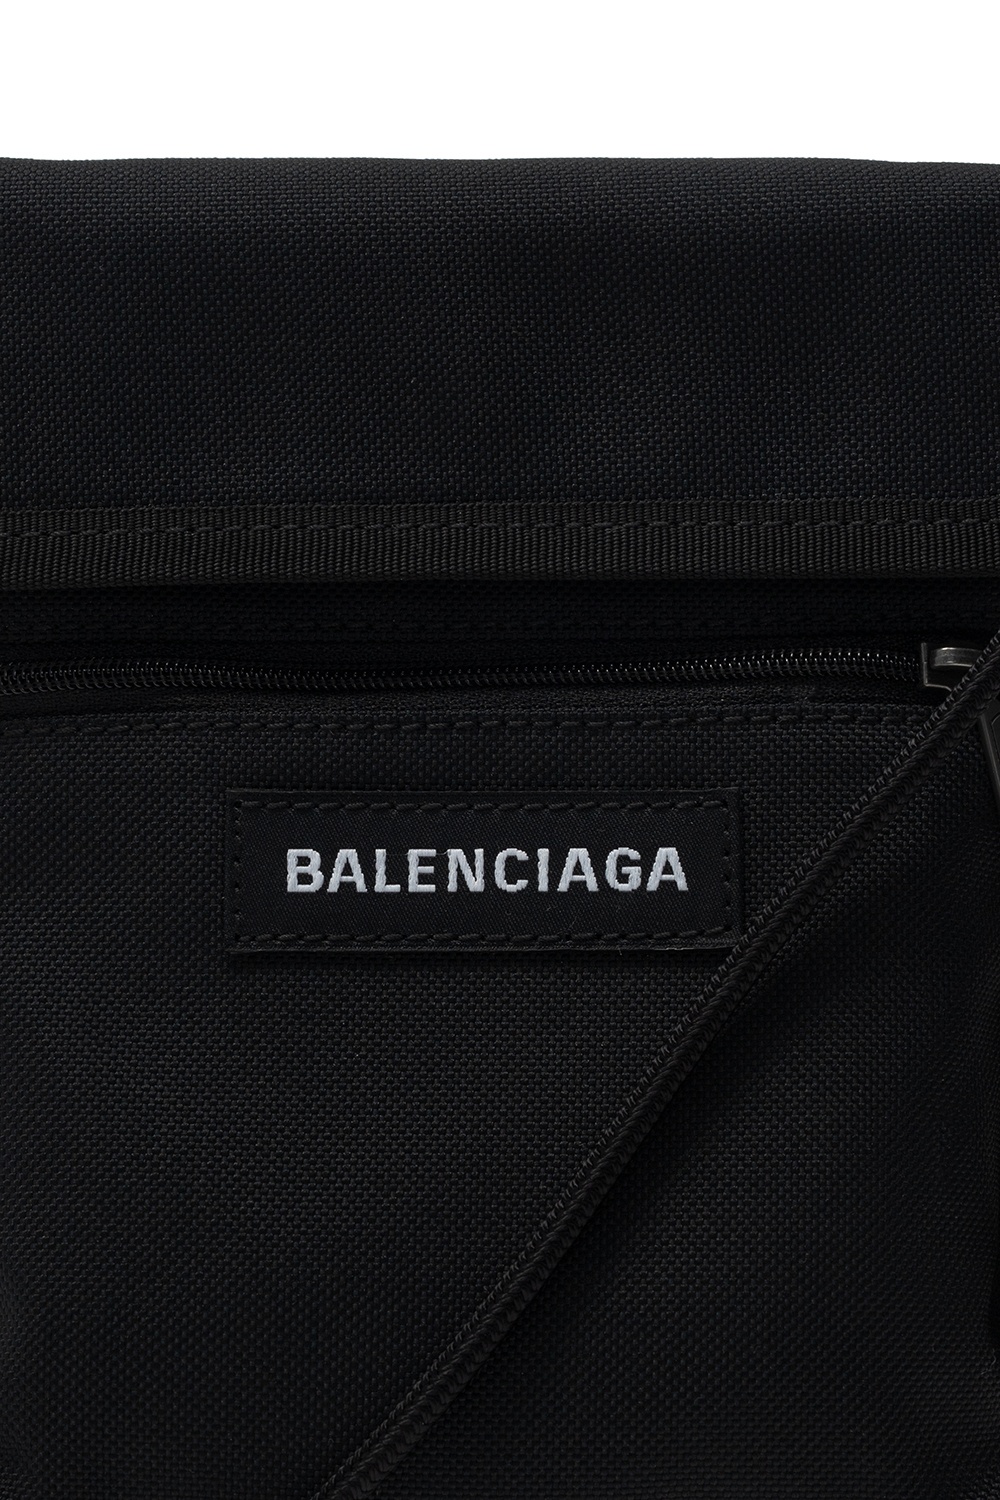 Balenciaga Backpack JENNY FAIRY MJP-J-193-10-01 Black